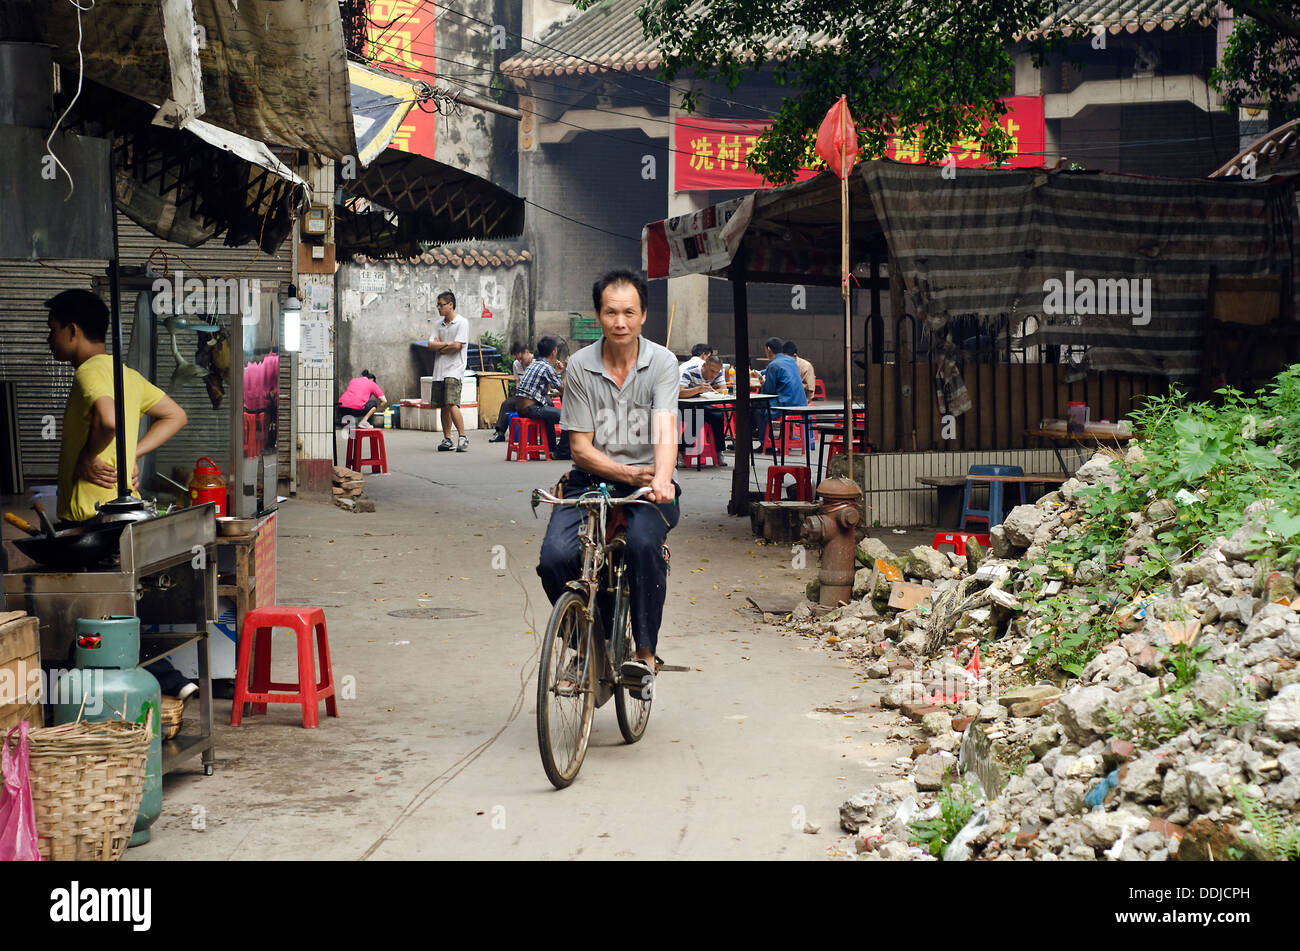 Straßenszene aus Xian Cun, Dorf Guangzhou, China Stockfoto